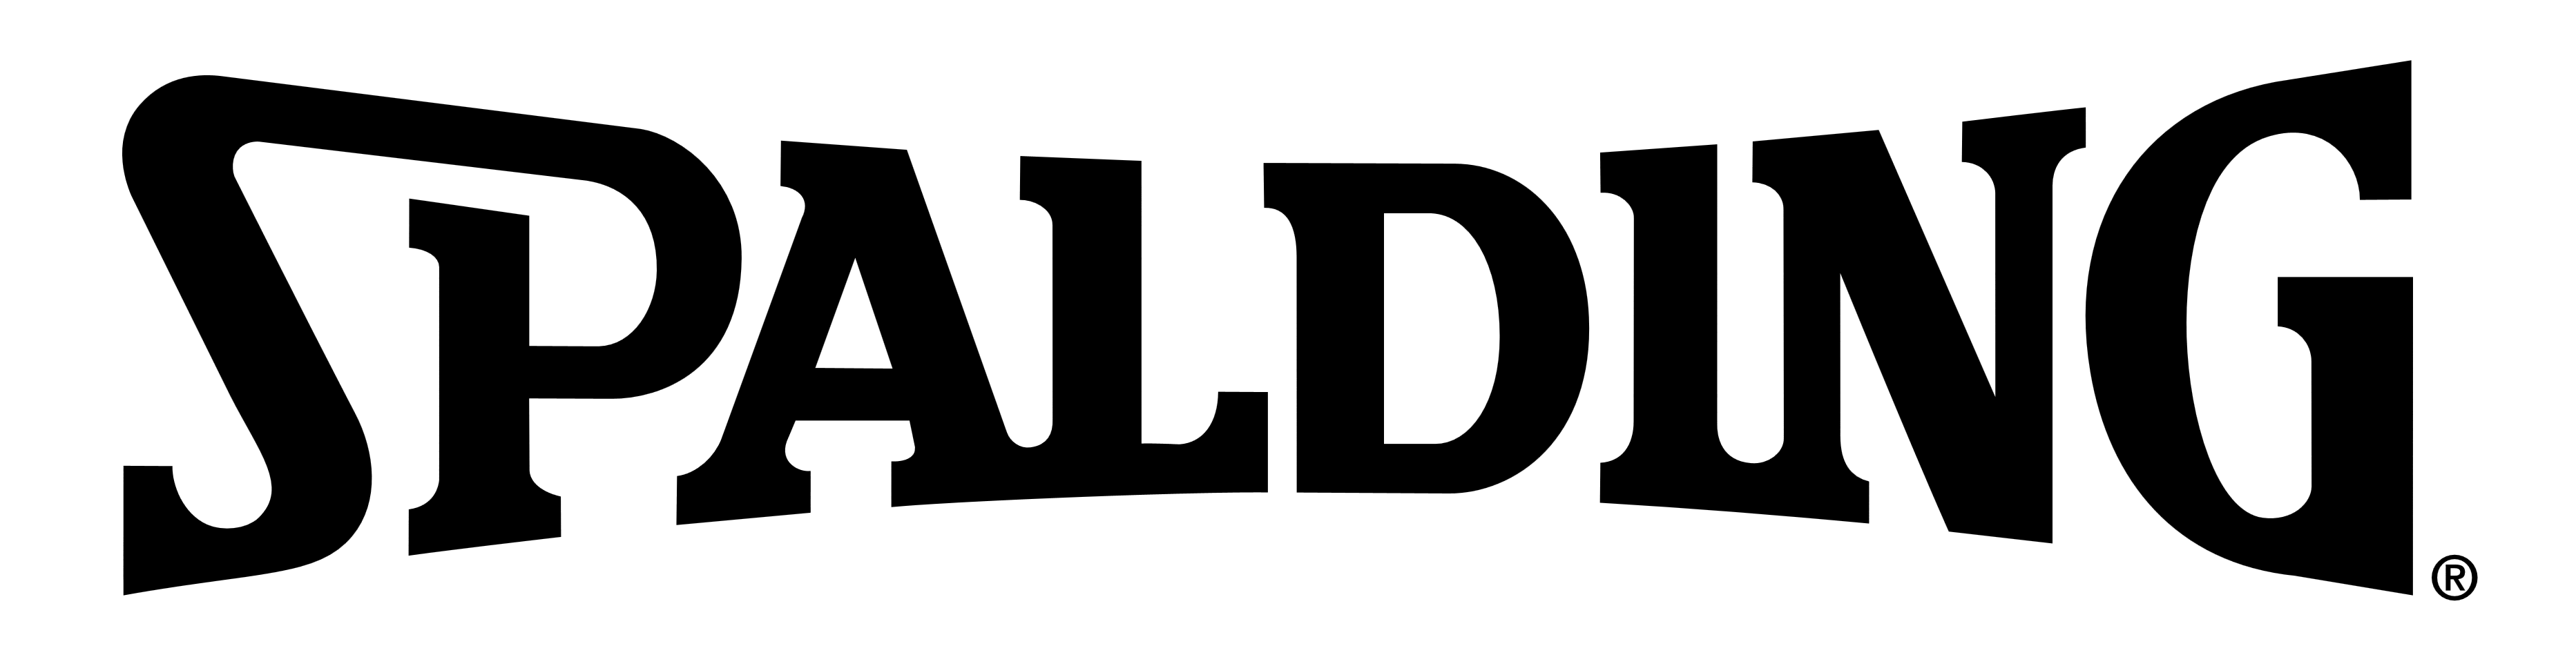 Spaulding Logo - Spalding – Logos Download